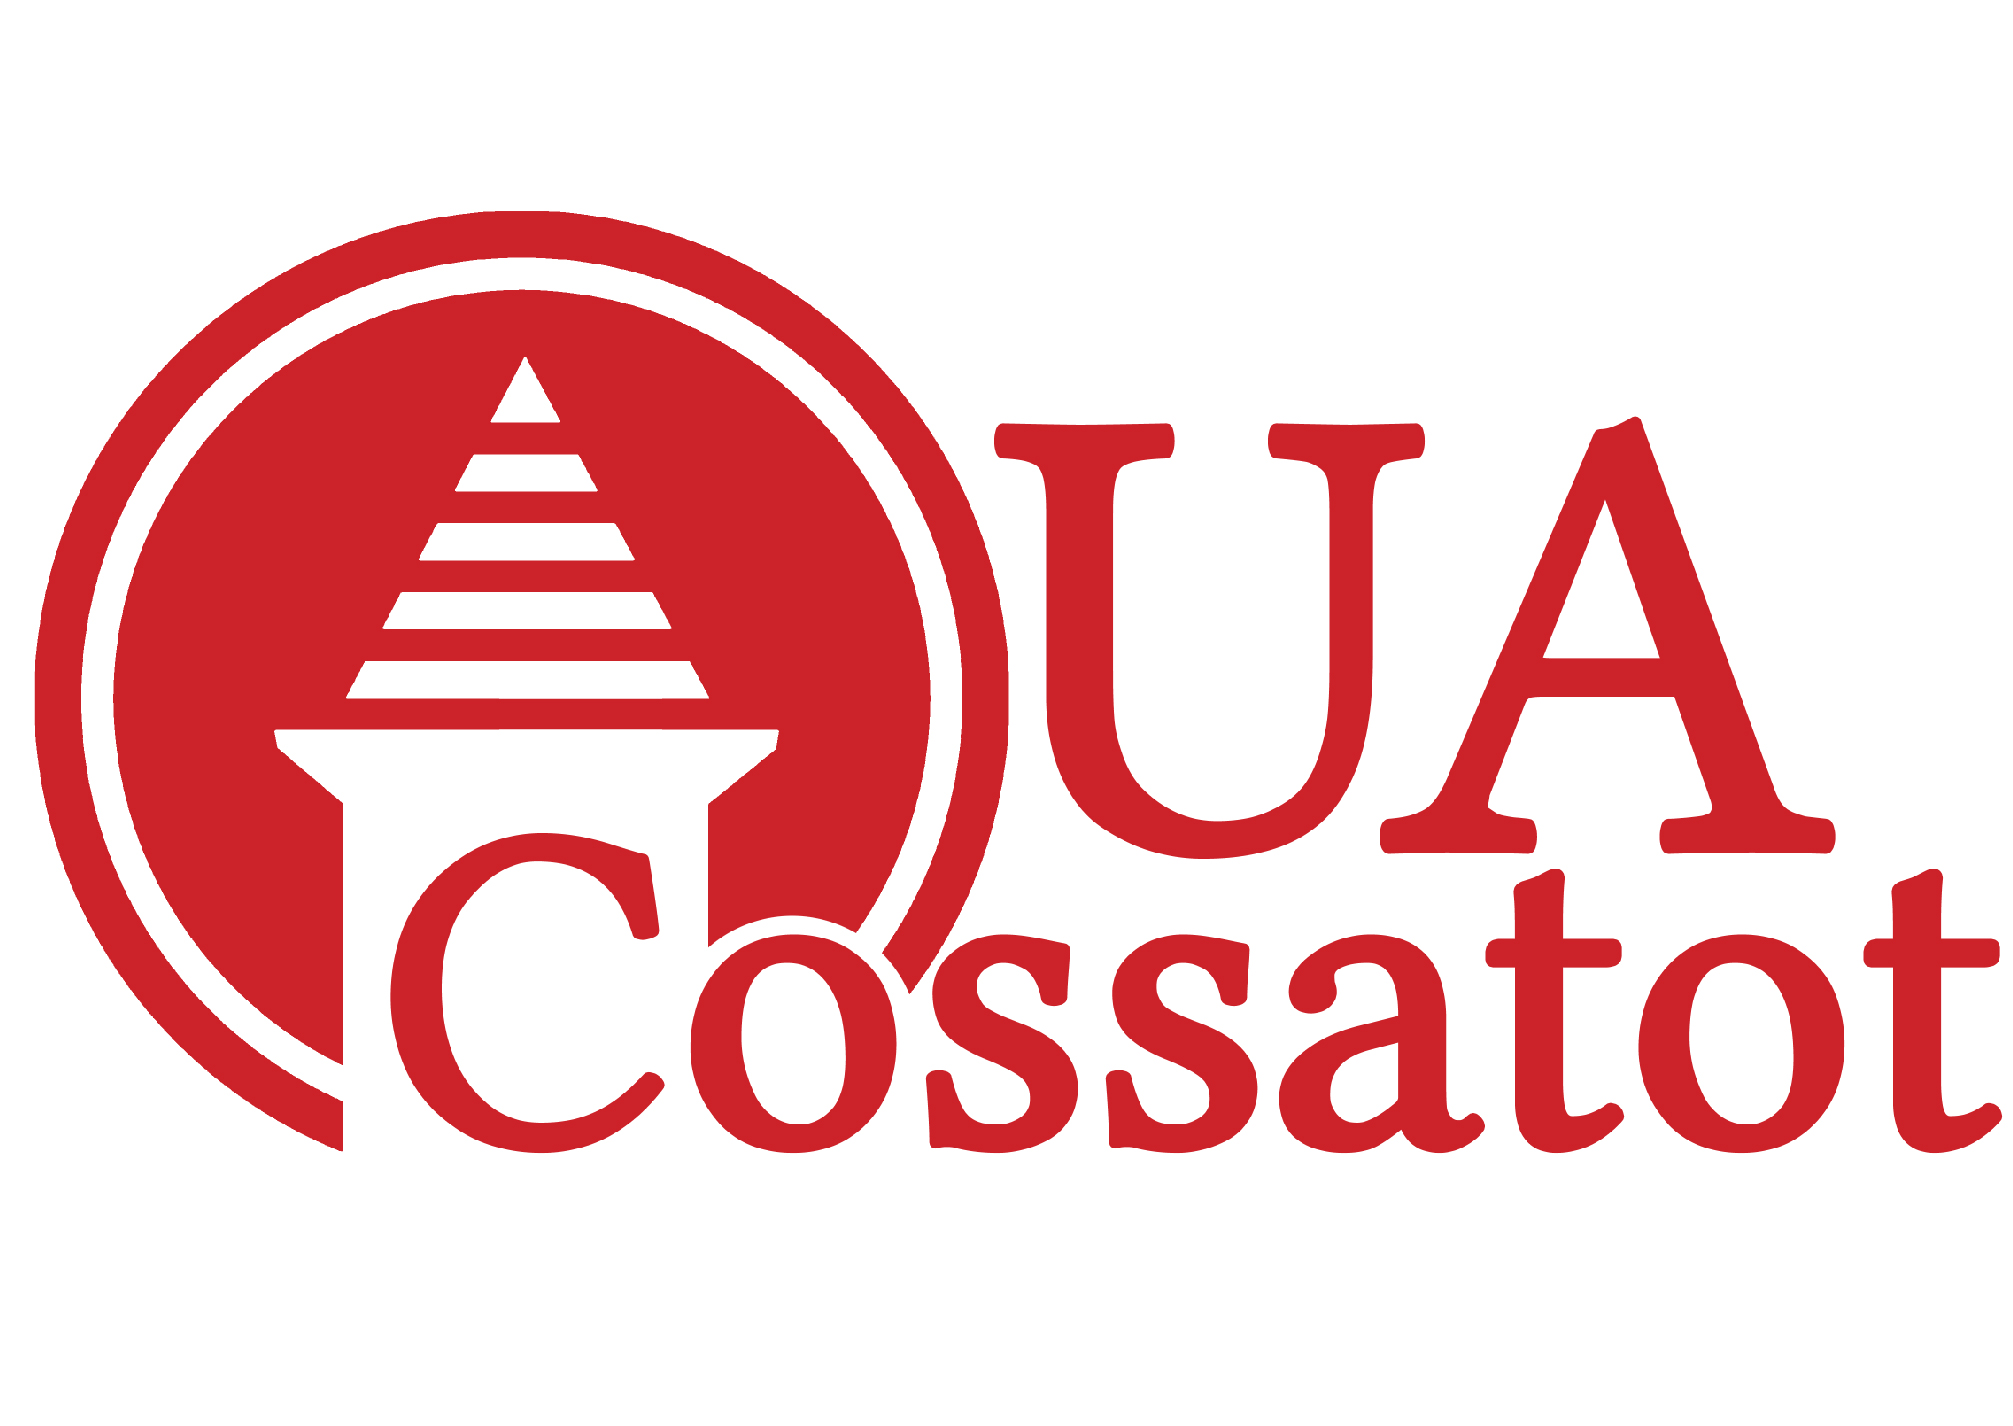 Community College at Cossatot logo